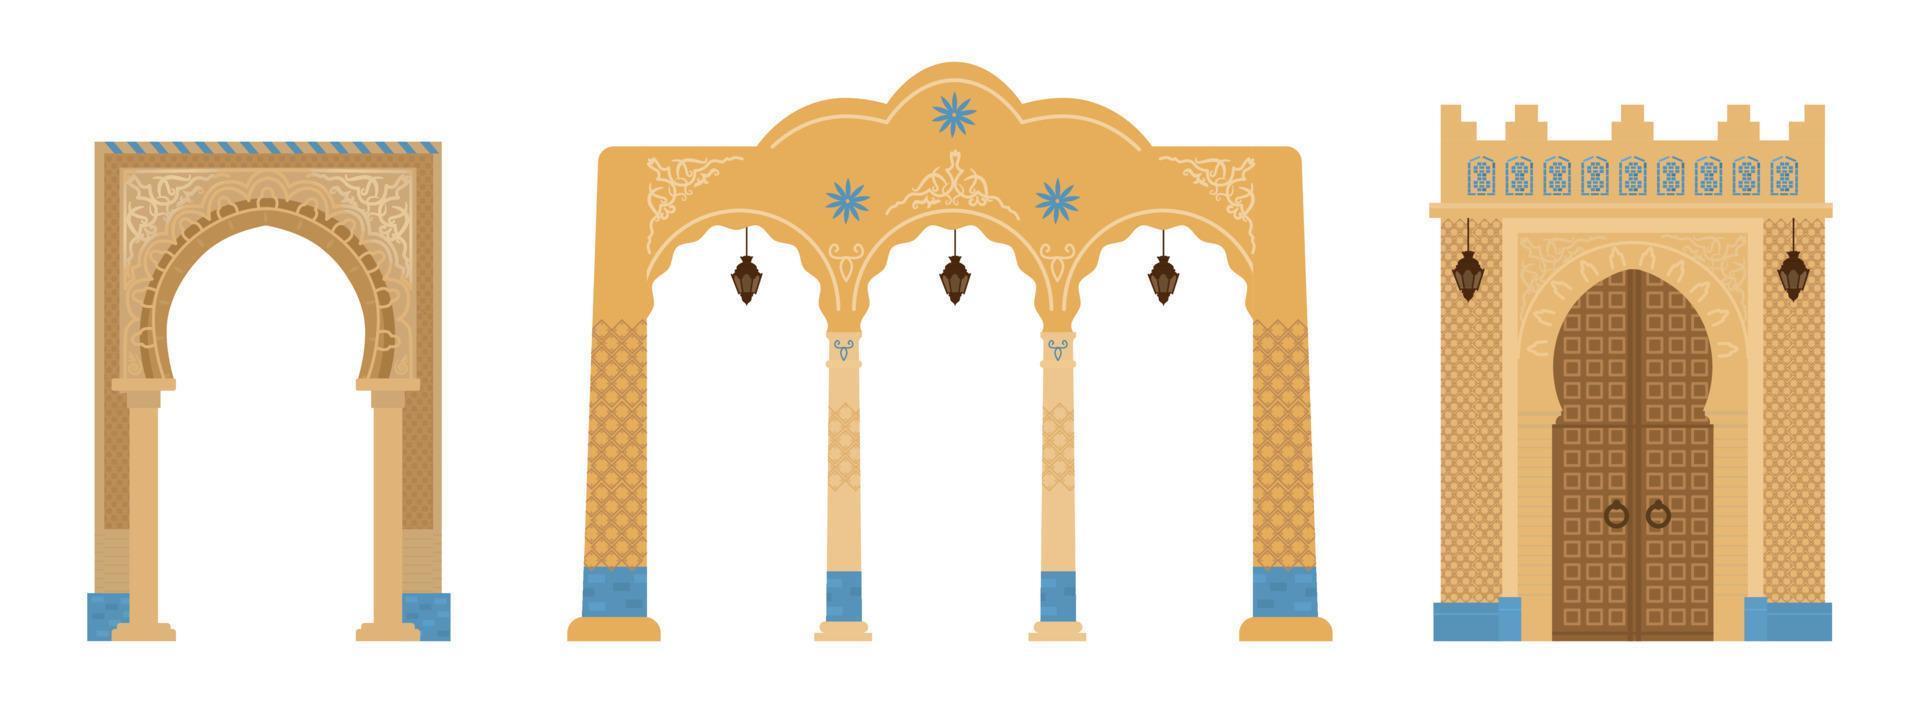 ensemble d'arcs indiens avec mosaïques, lanternes. éléments d'architecture du moyen-orient. anciennes portes. illustration vectorielle plane. vecteur